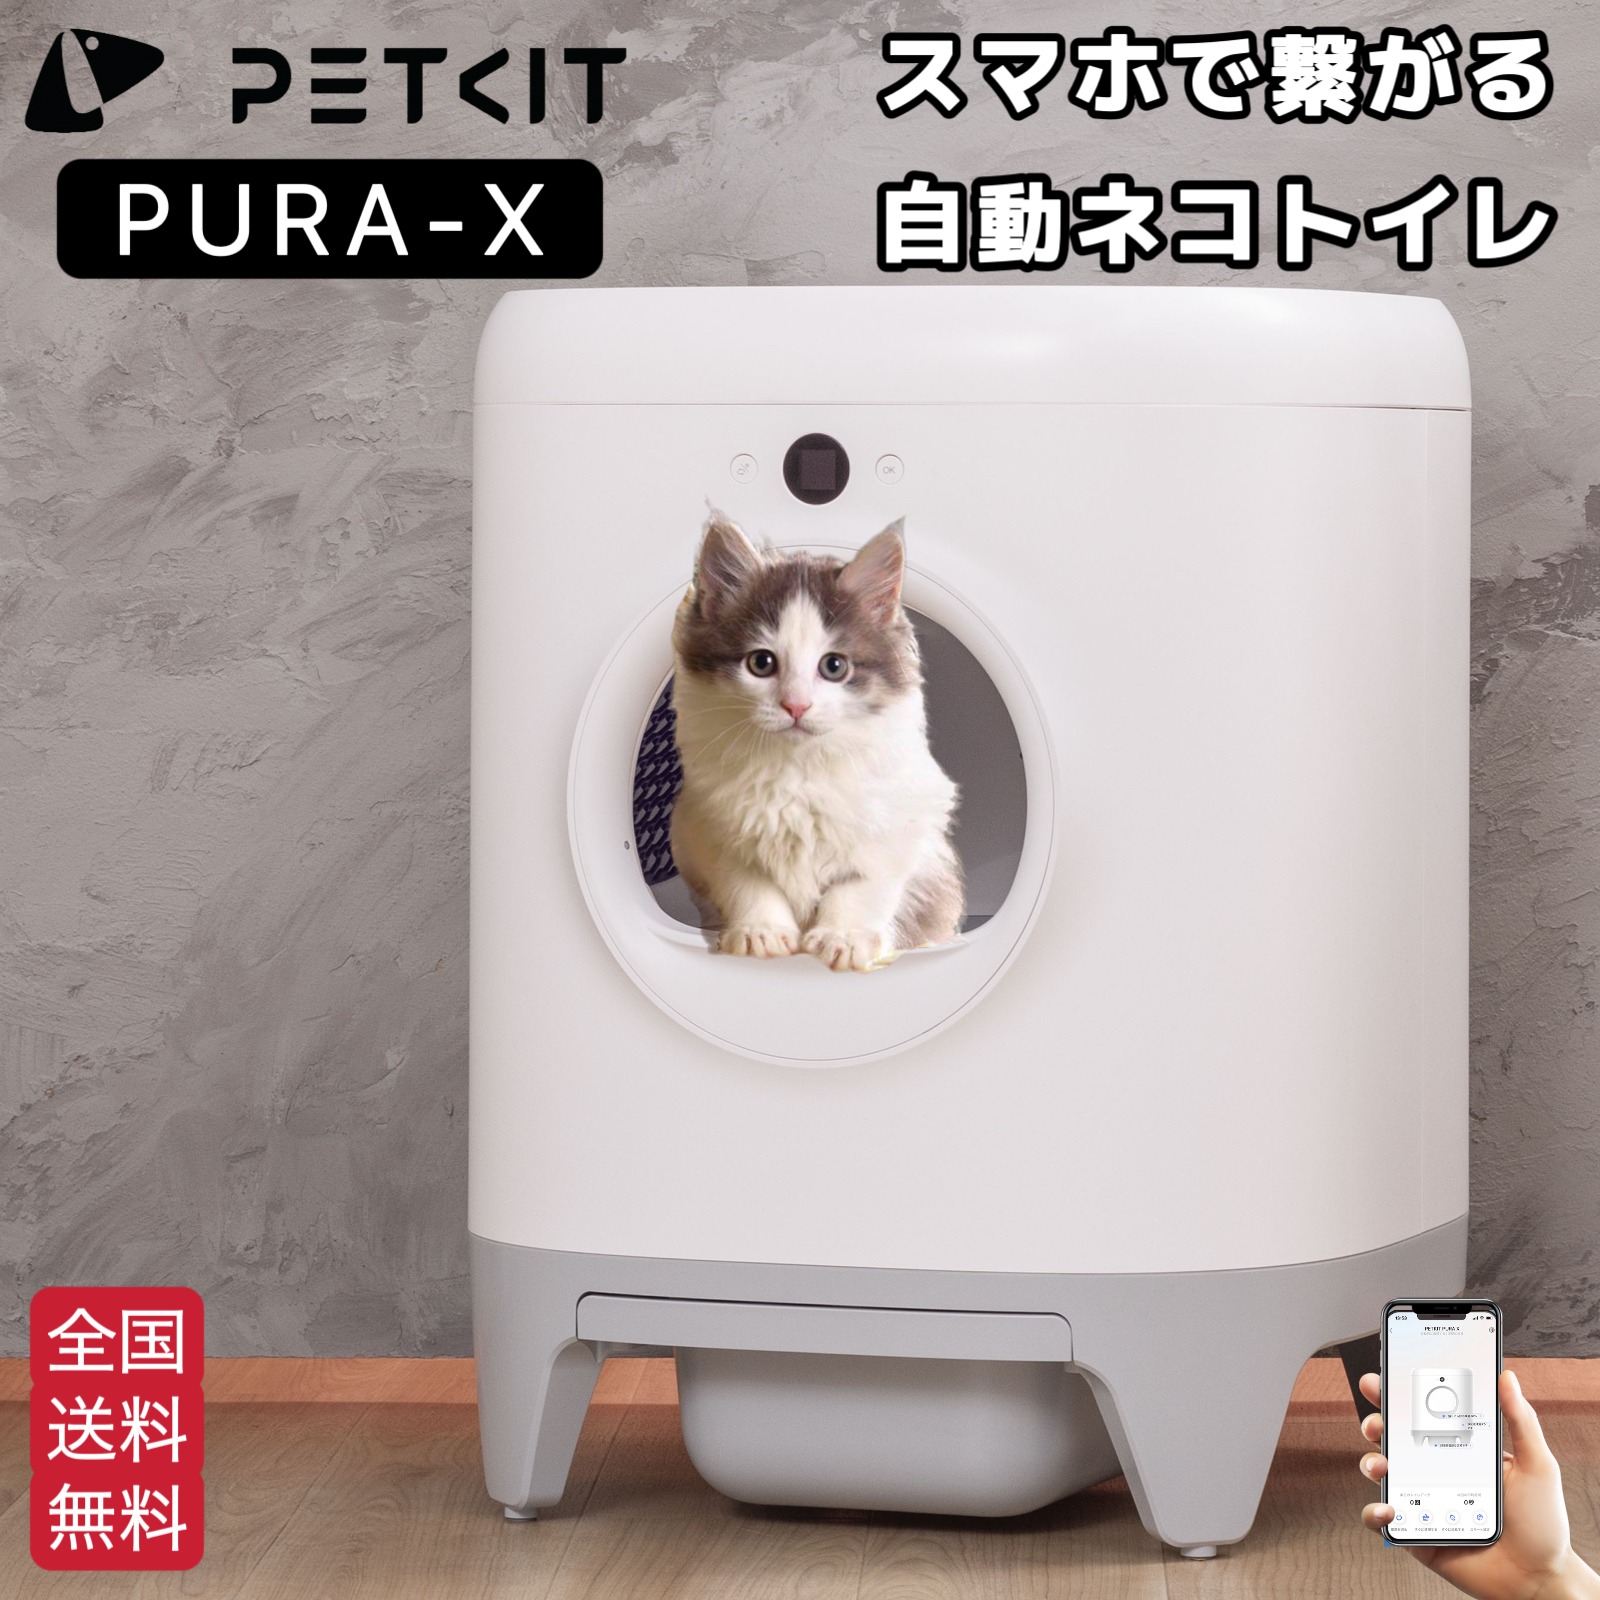 クーポンあり【PETKIT PURA X】自動トイレ 猫 大型 大きめ 猫 トイレ 自動 スマホ管理 センサー付き 飛散防止 自動清掃 定期清掃  掃除簡単 お留守番 専用APP | 一本ペット